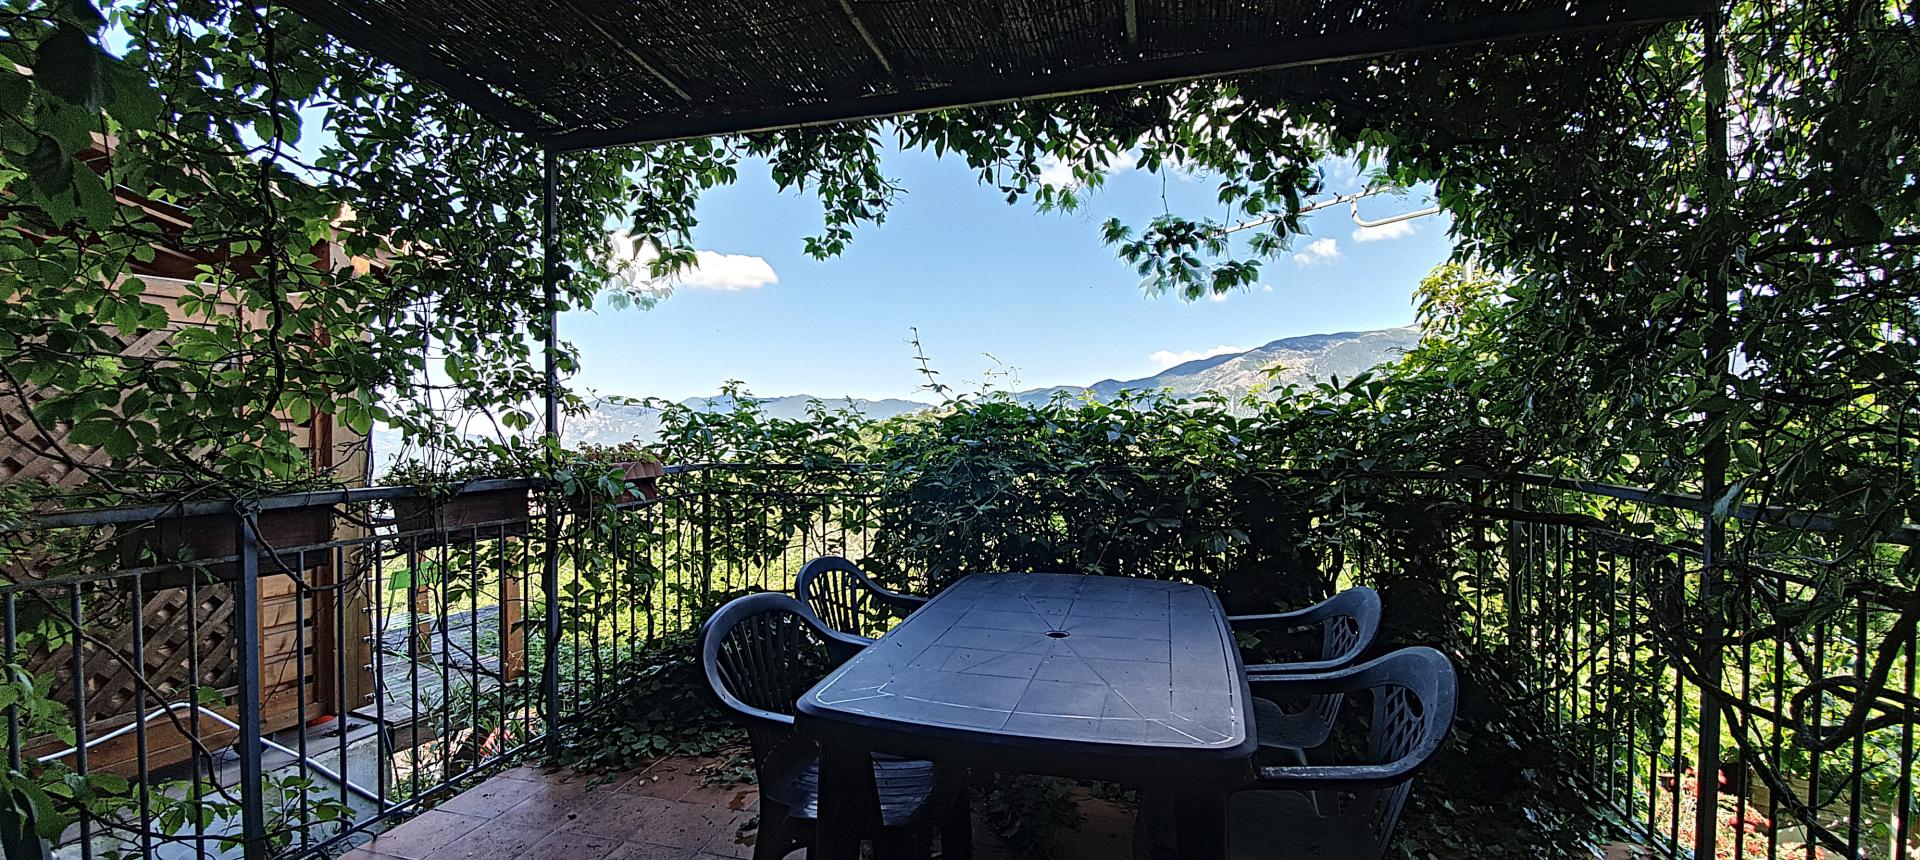 Maison de village, à vendre, deux chambres, terrasse avec vue dégagée sur la vallée de la Gravona et le Mont Gozzi, cachet de l'ancien